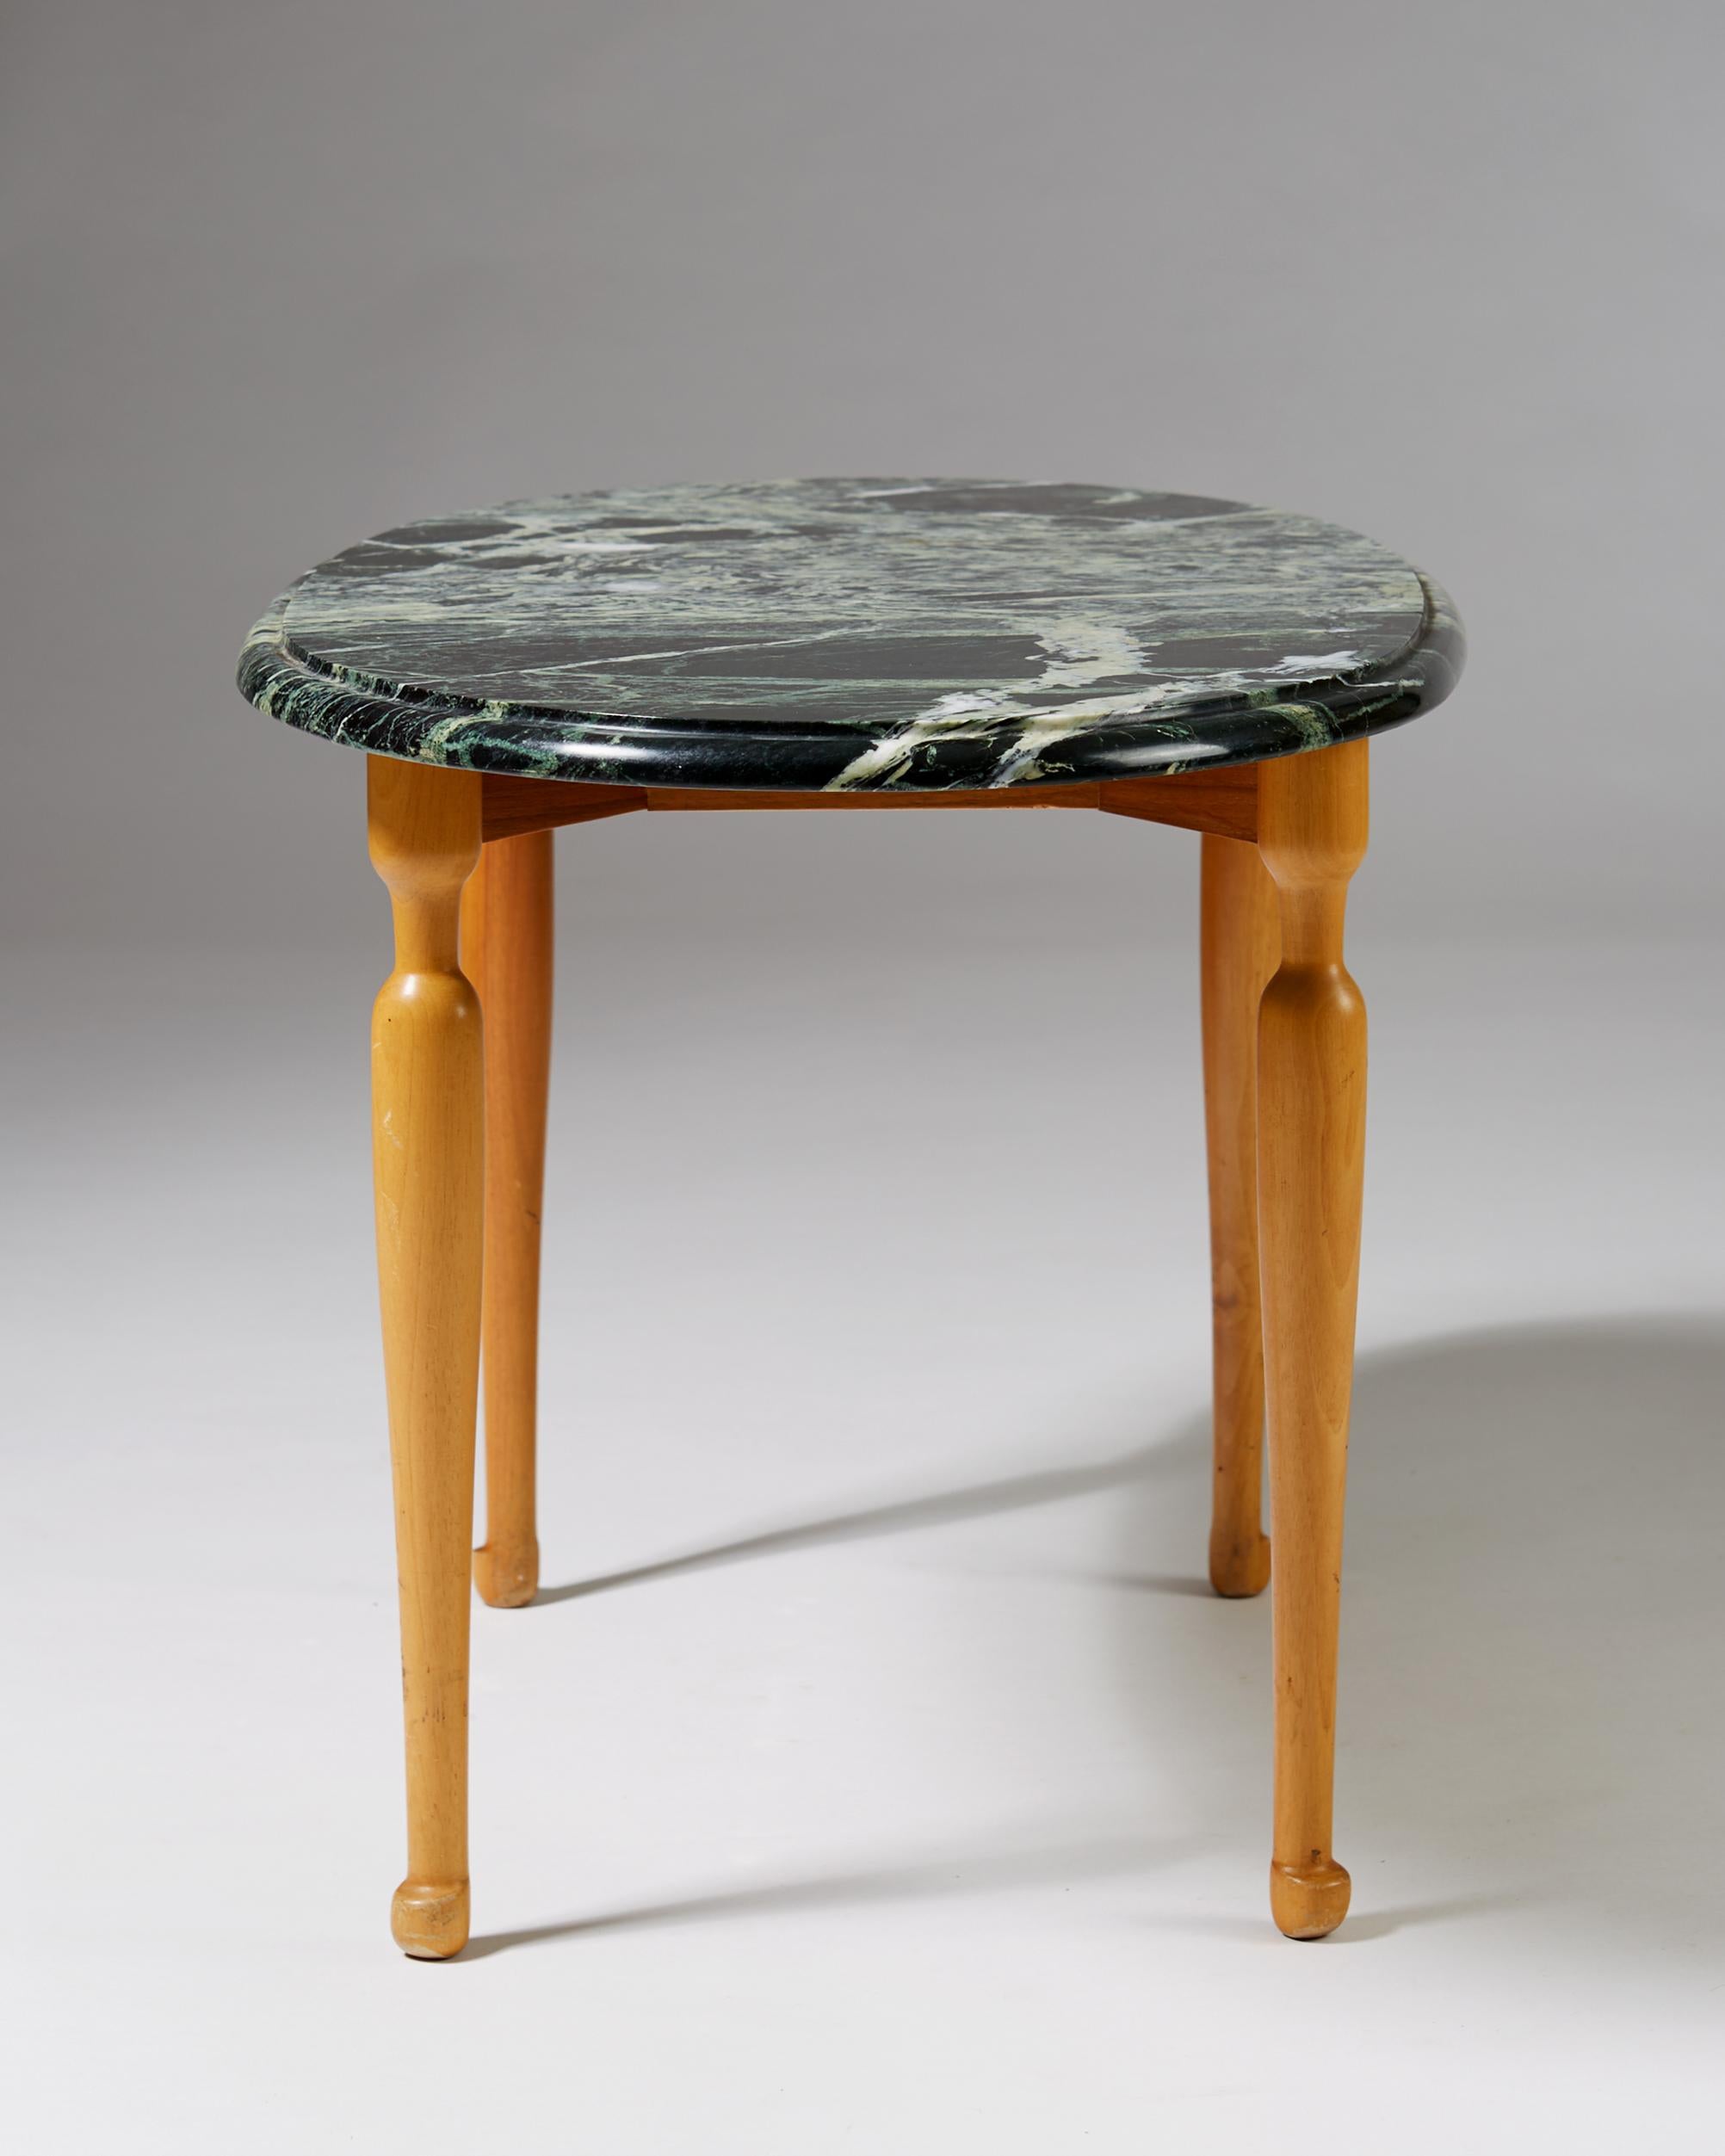 Occasional Table Designed by Josef Frank for Svenskt Tenn, Sweden, 1939 (Mitte des 20. Jahrhunderts)